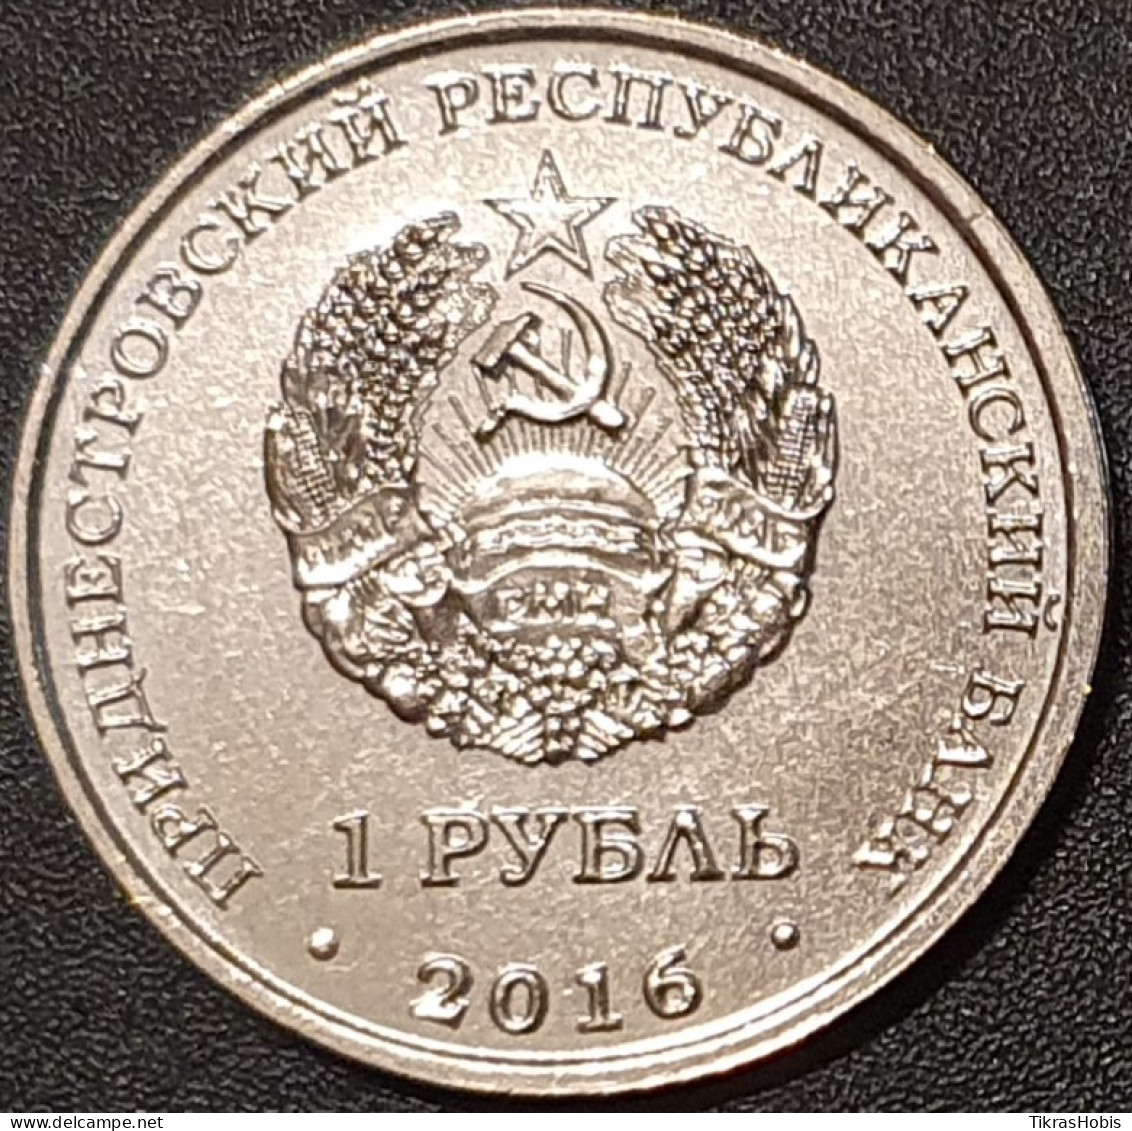 Moldova, Transnistria 1 Ruble, 2016 IIHF World Cup UC123 - Moldawien (Moldau)